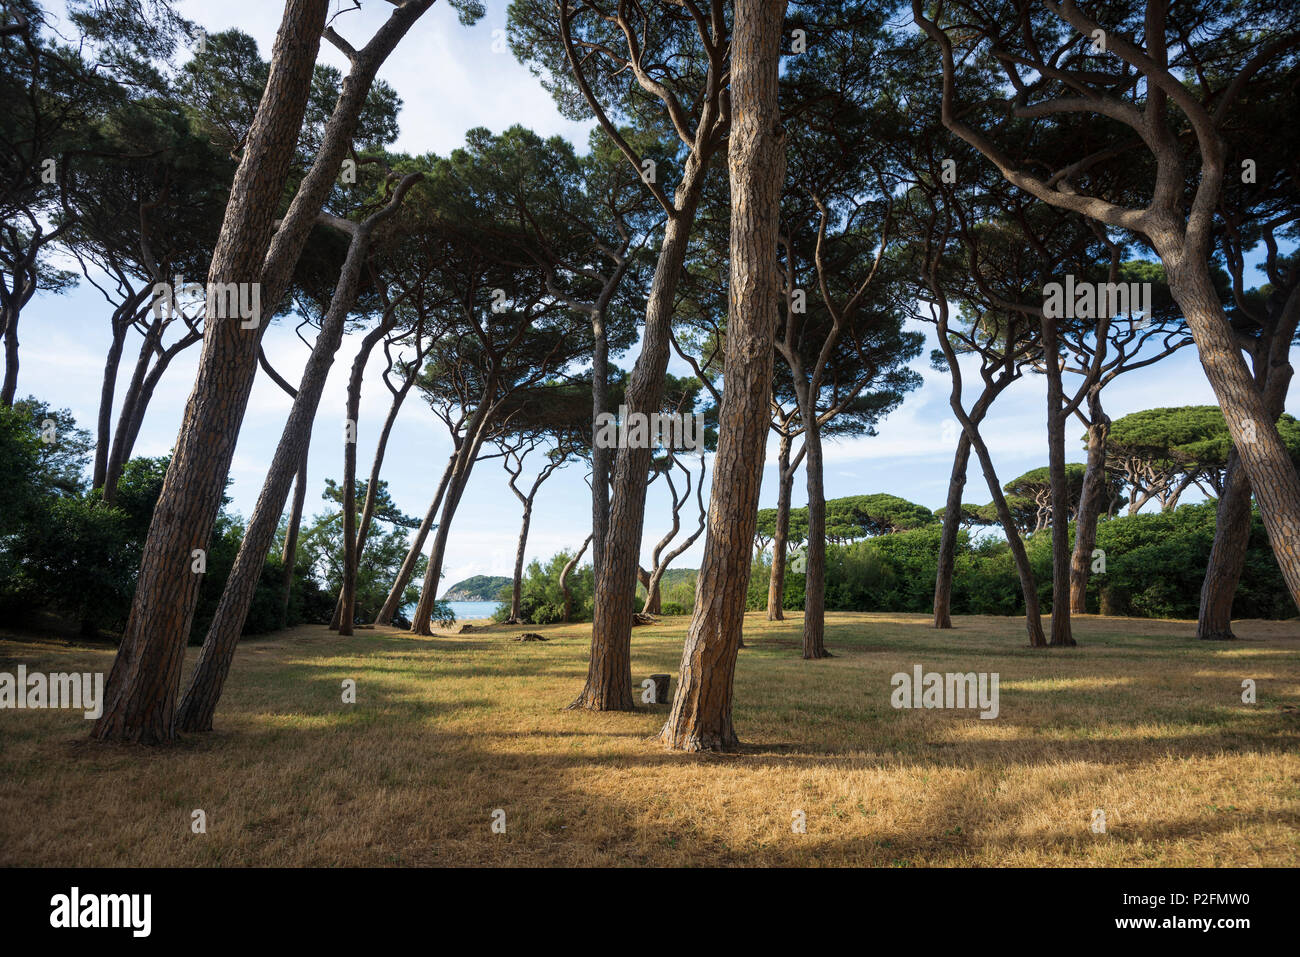 pine trees and beach, Populonia, near Piombino, province of Livorno, Tuscany, Italy Stock Photo